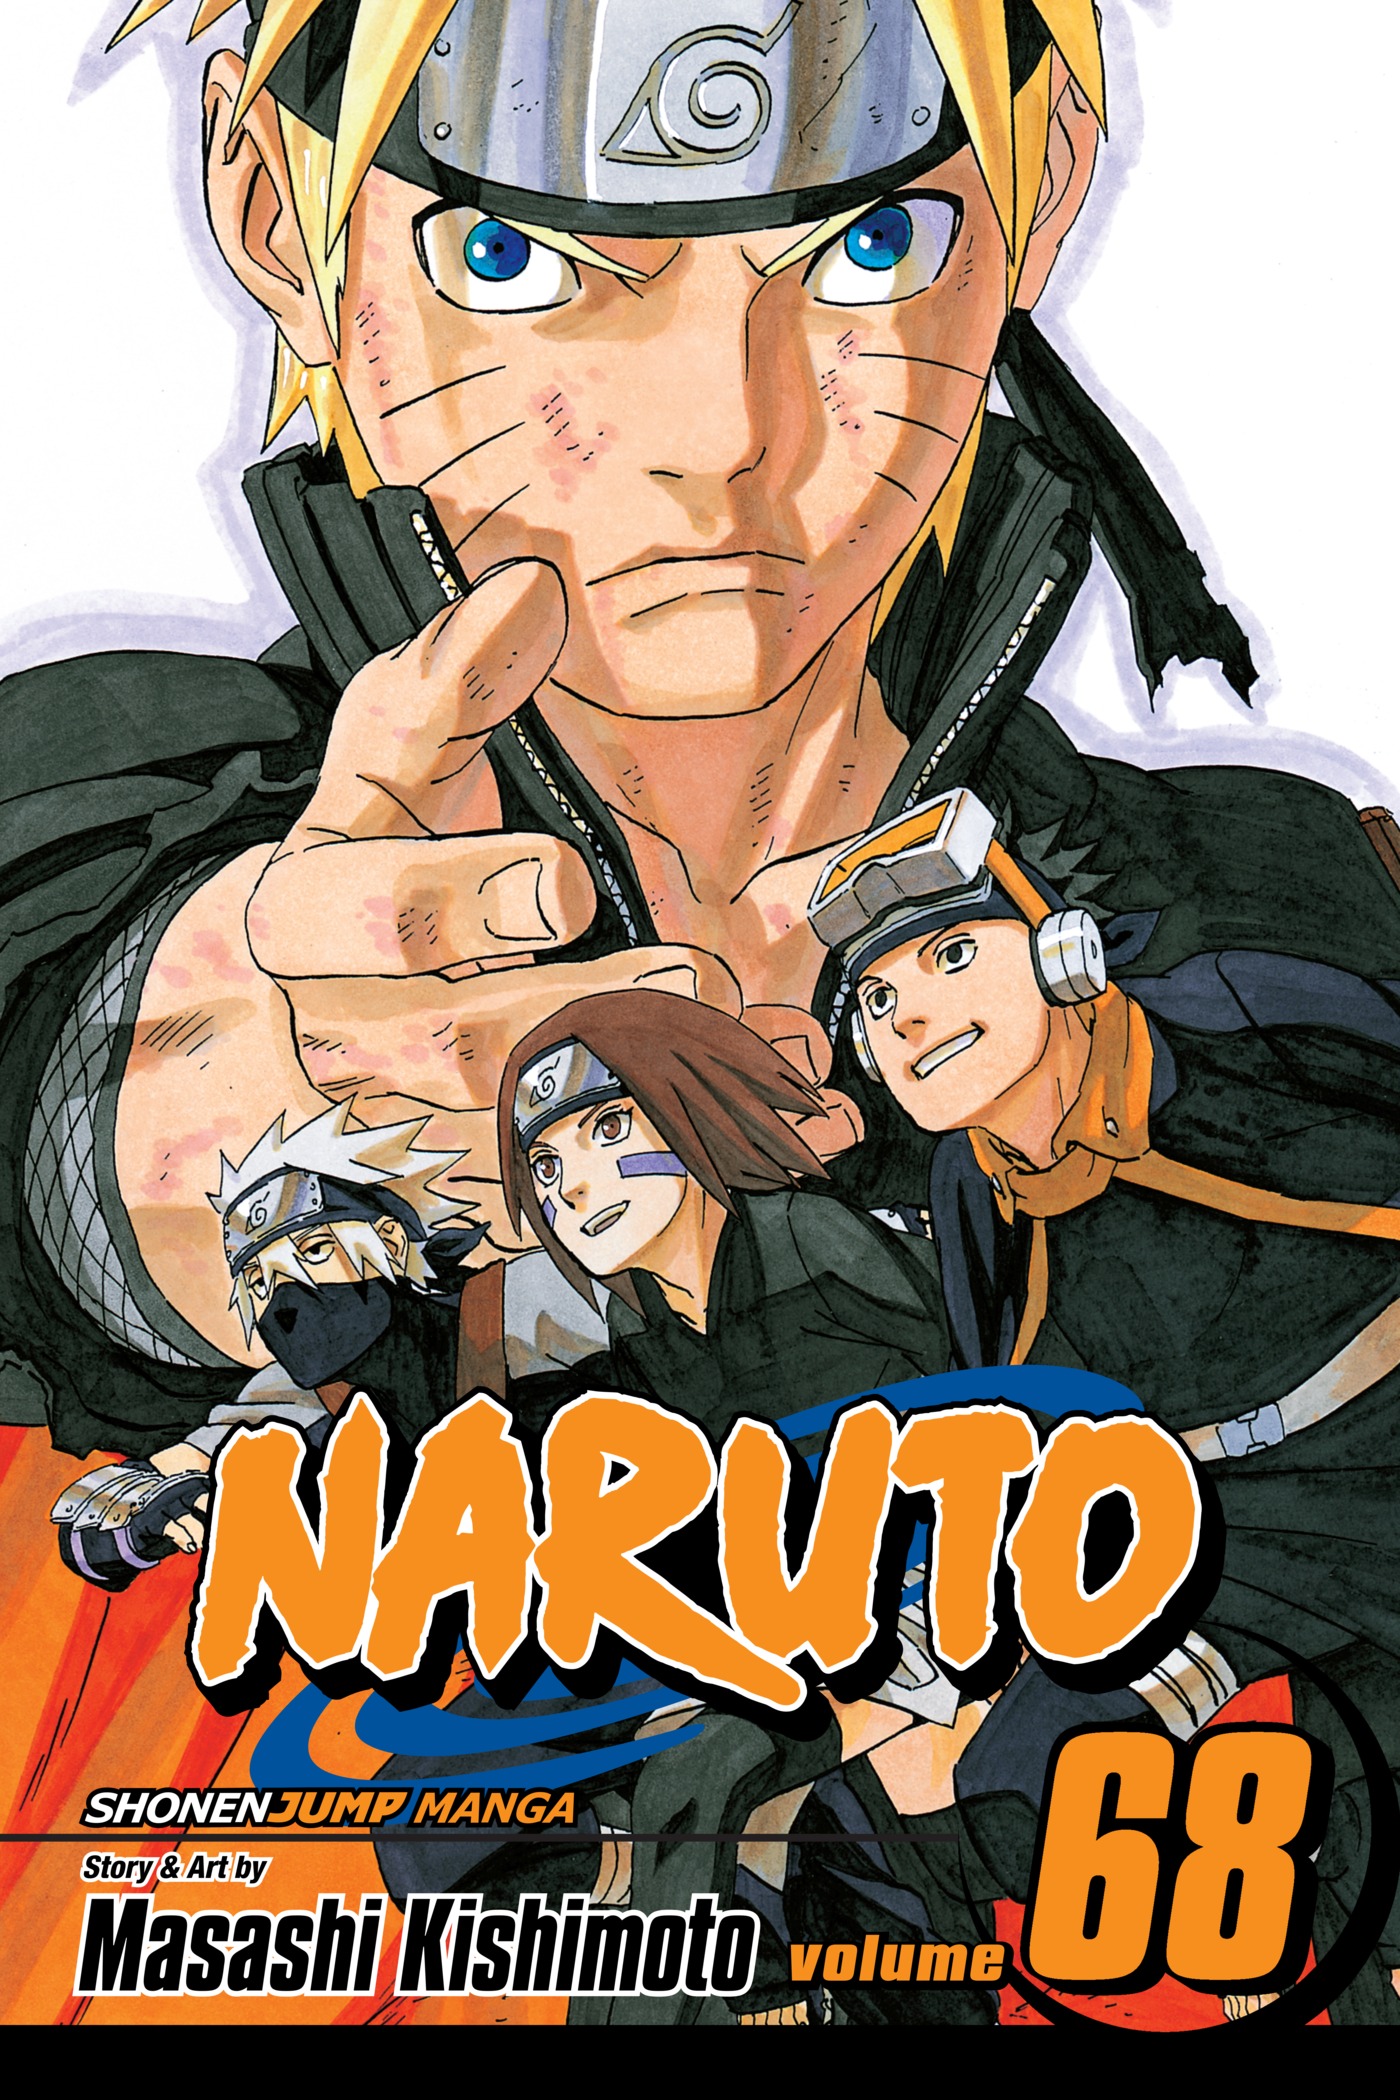 NARUTO Vol.68  NARUTO OFFICIAL SITE (NARUTO & BORUTO)